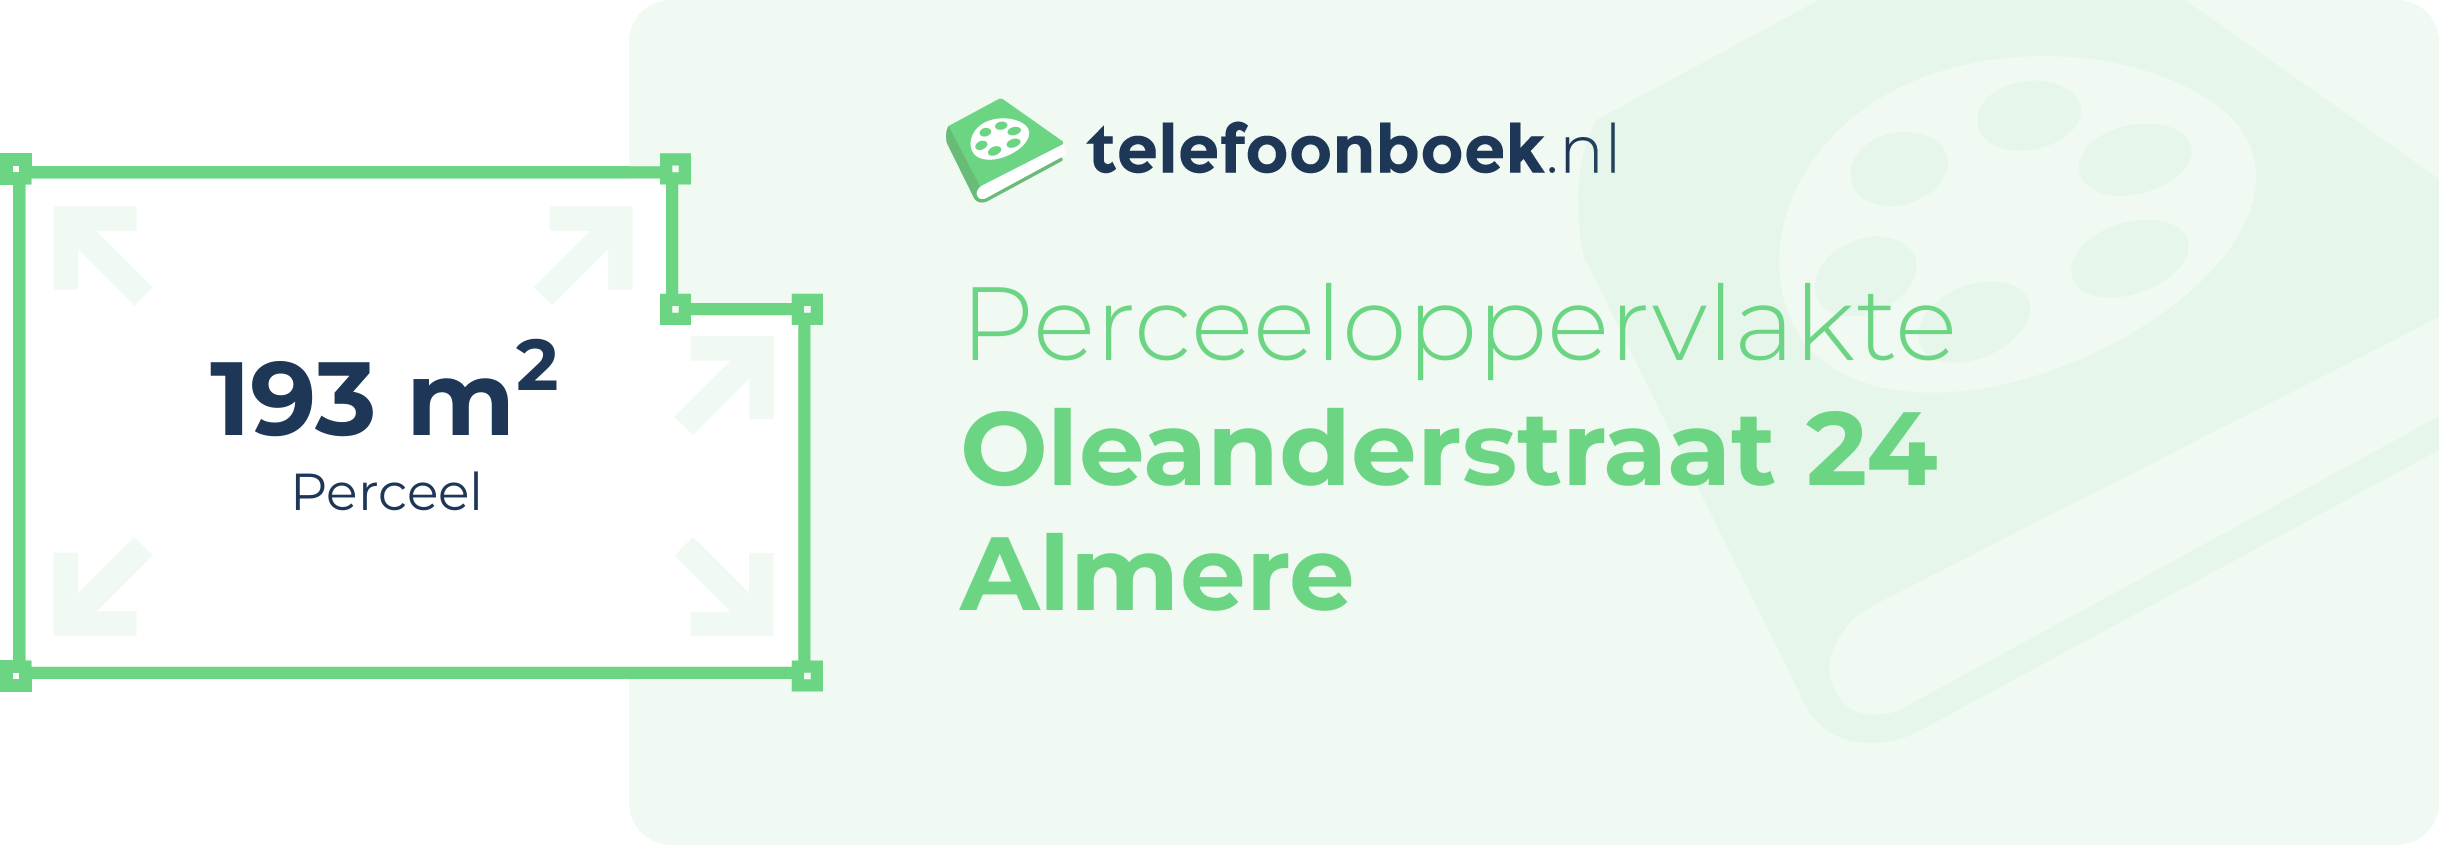 Perceeloppervlakte Oleanderstraat 24 Almere